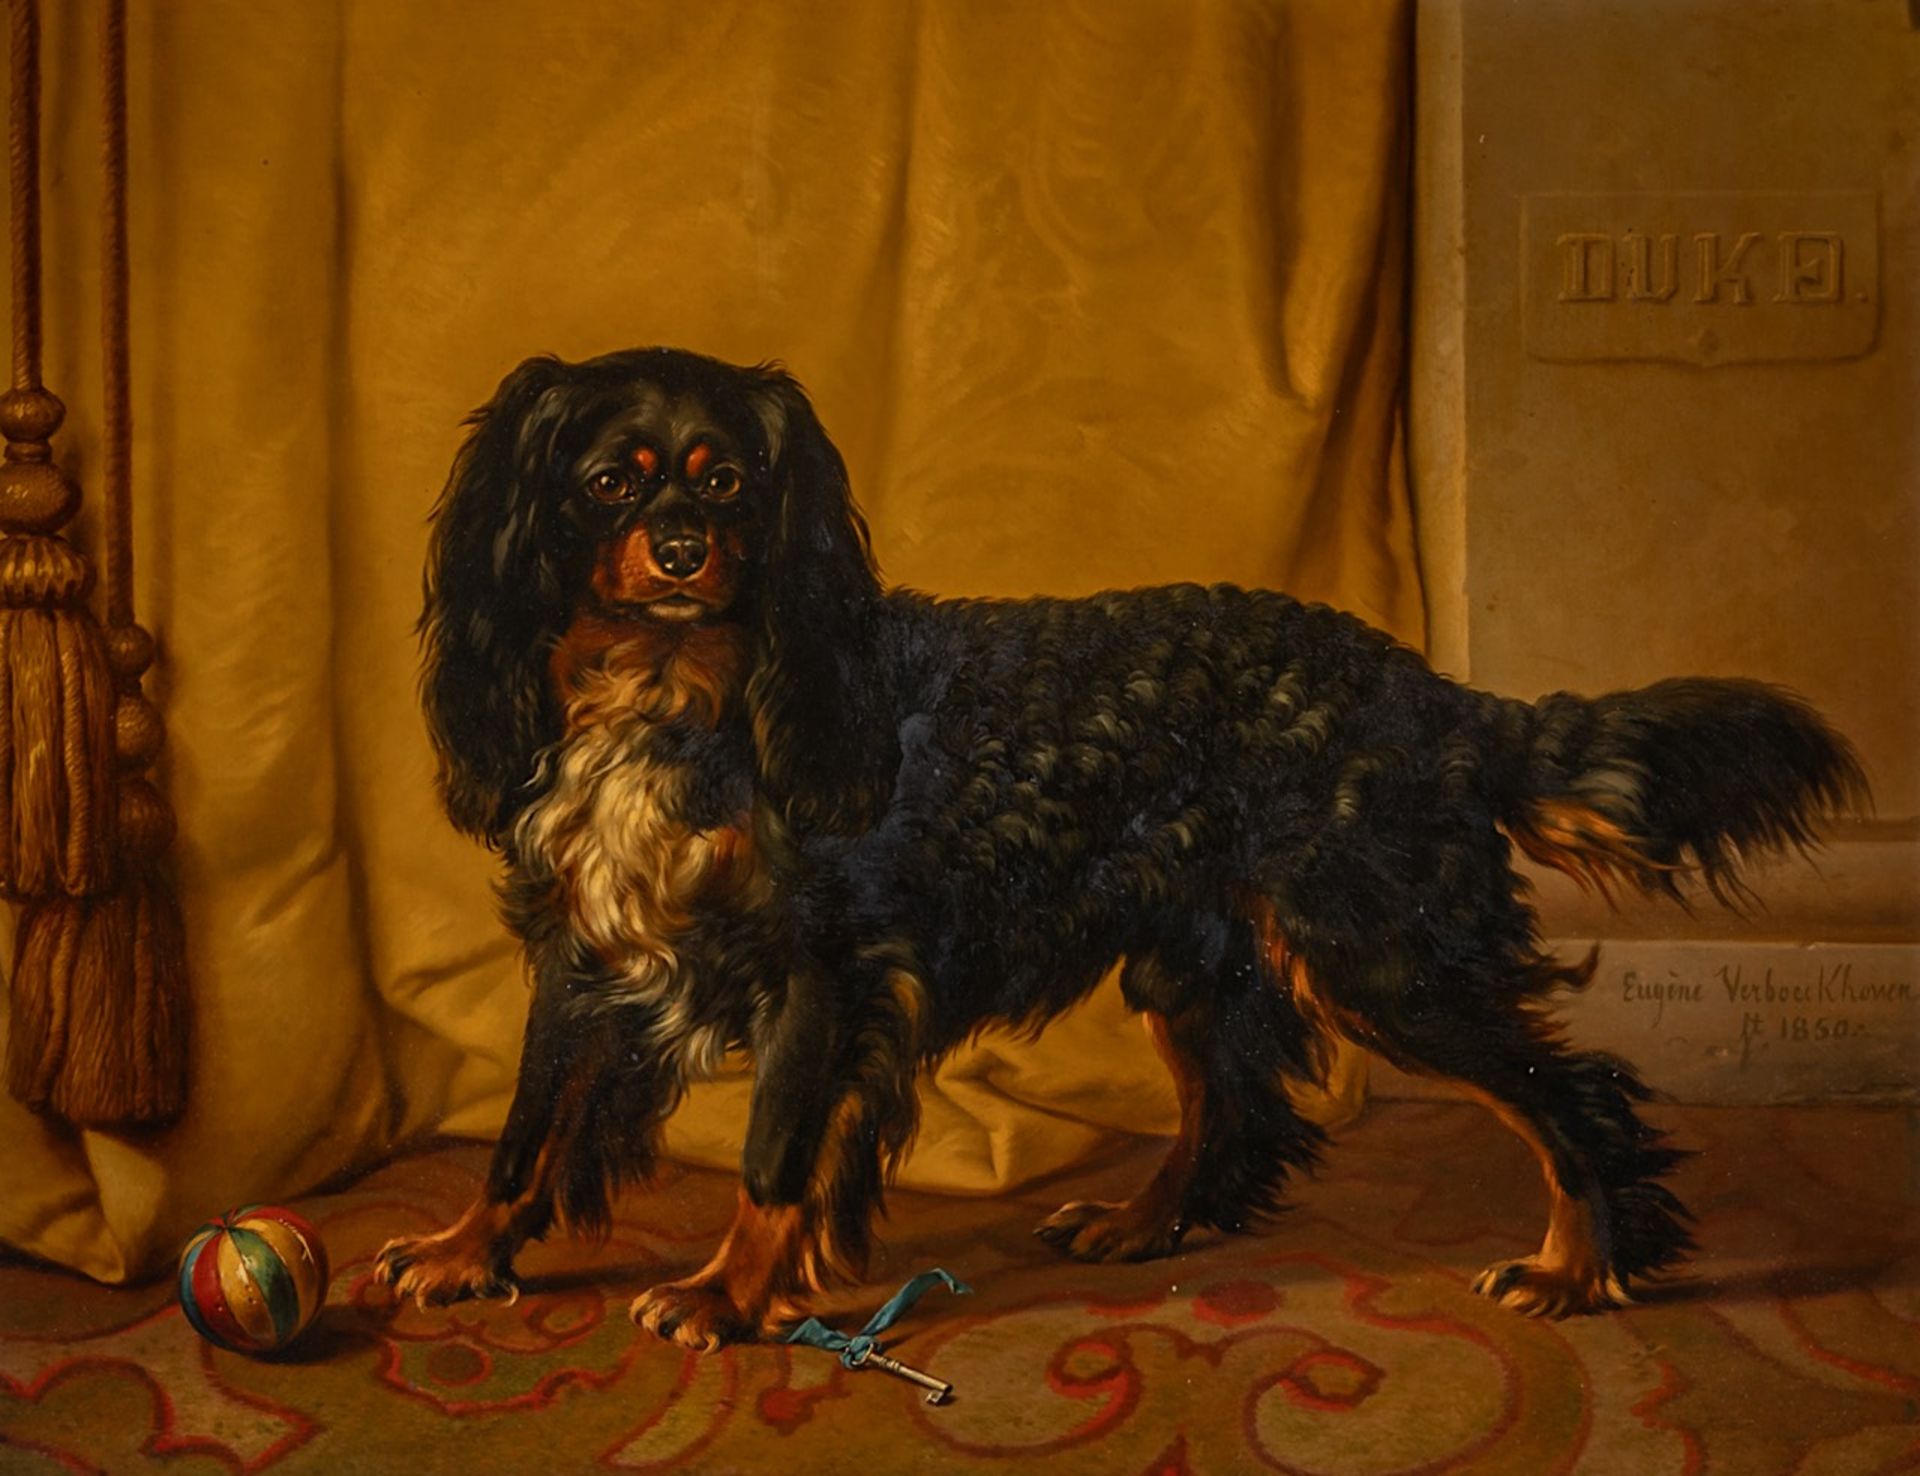 Eugene Verboeckhoven (1798/99-1881), A King Charles cavalier spaniel named Duke, 1850, oil on mahoga